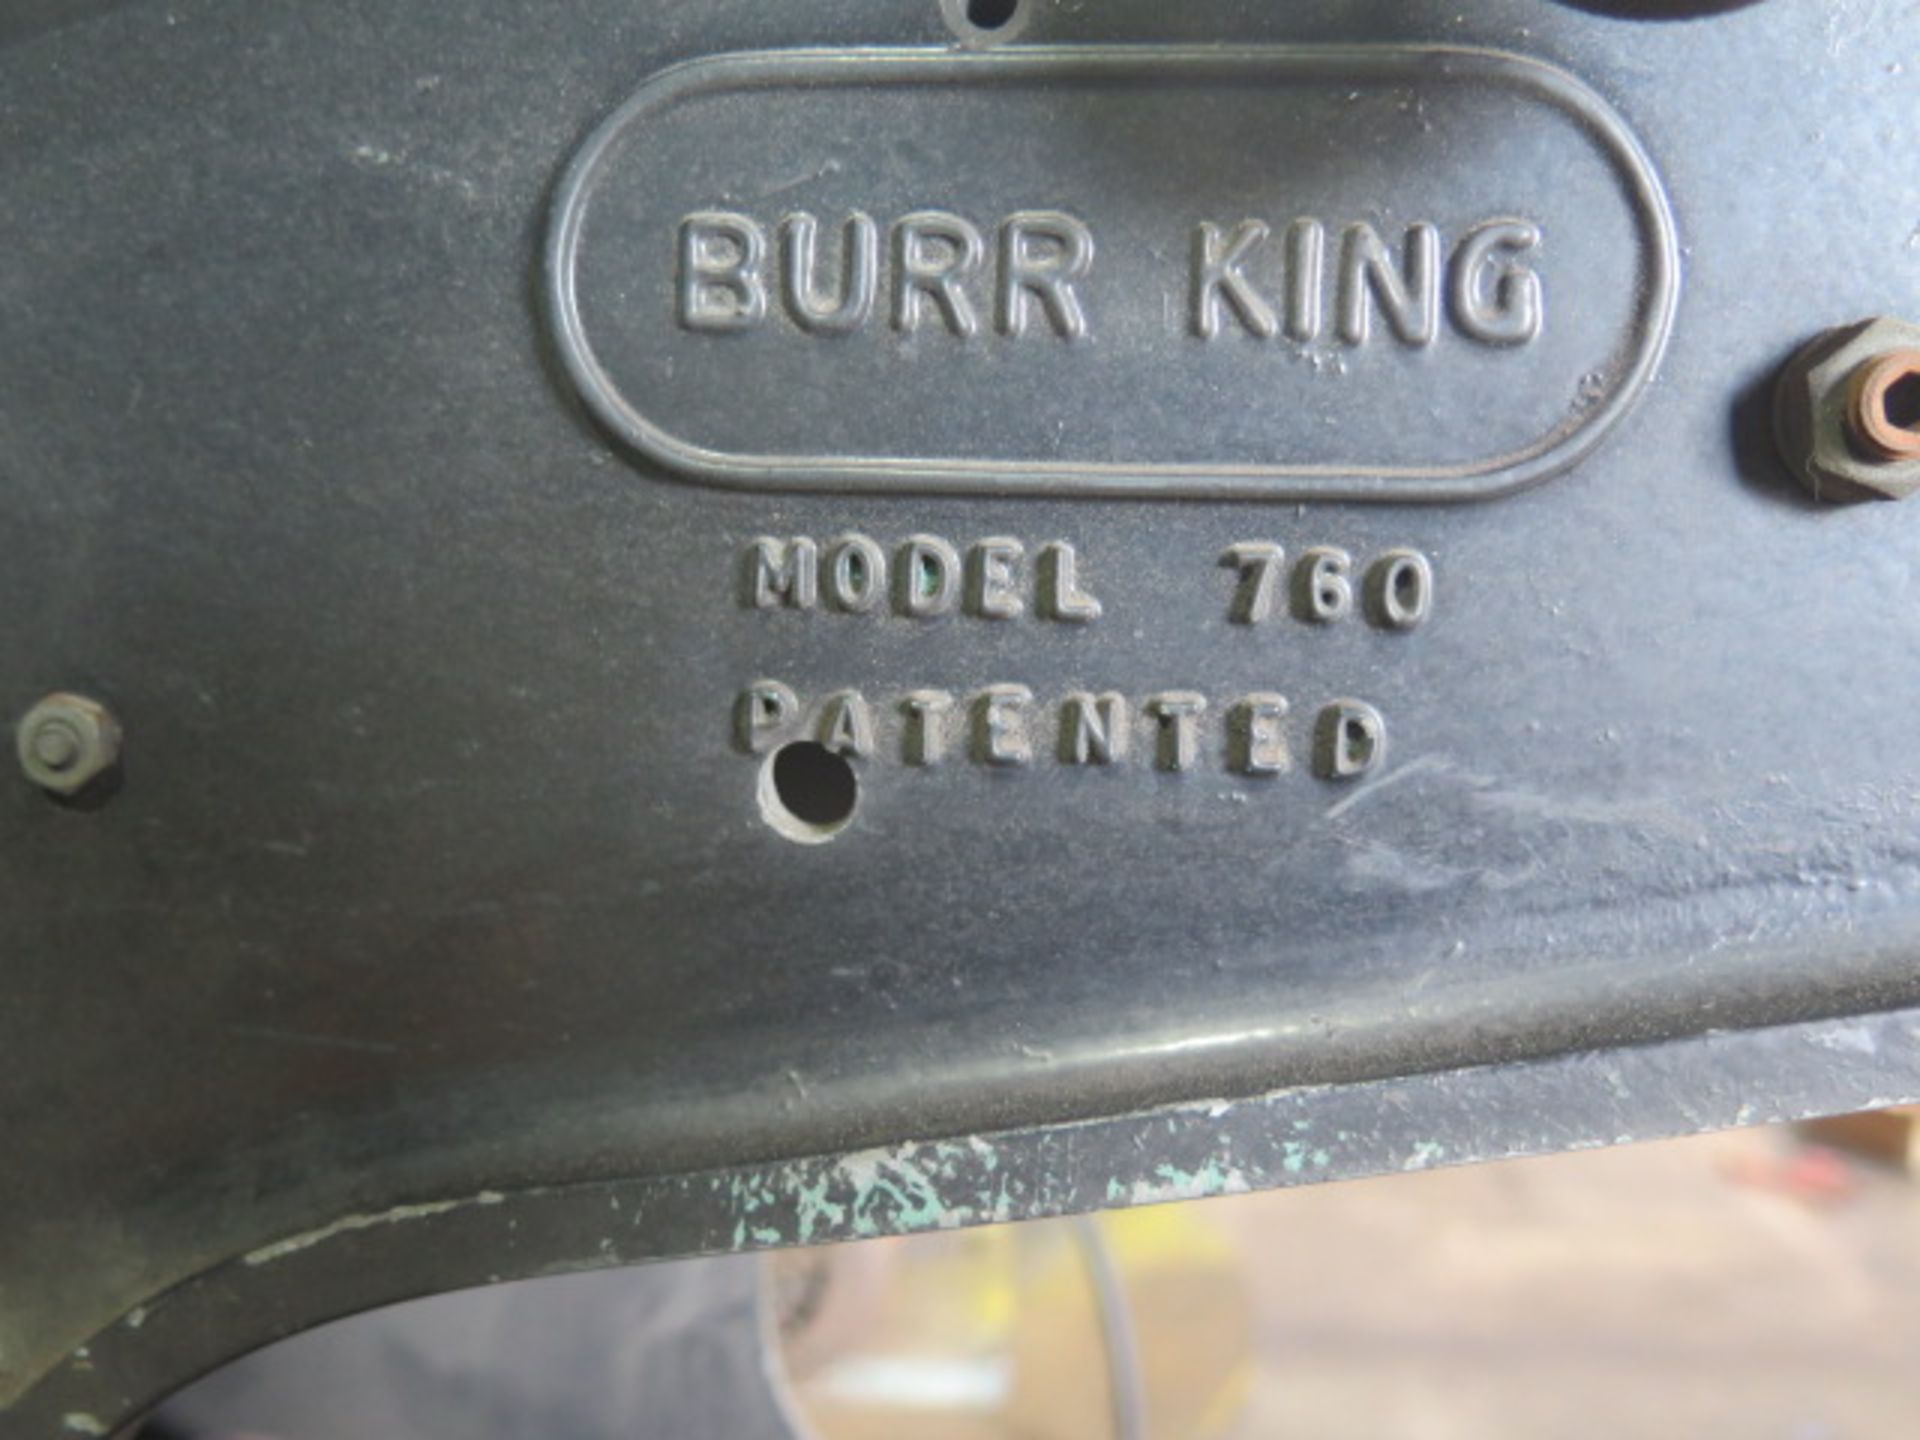 Burr King mdl. 760 1 ½” Pedestal Belt Sander - Image 4 of 4